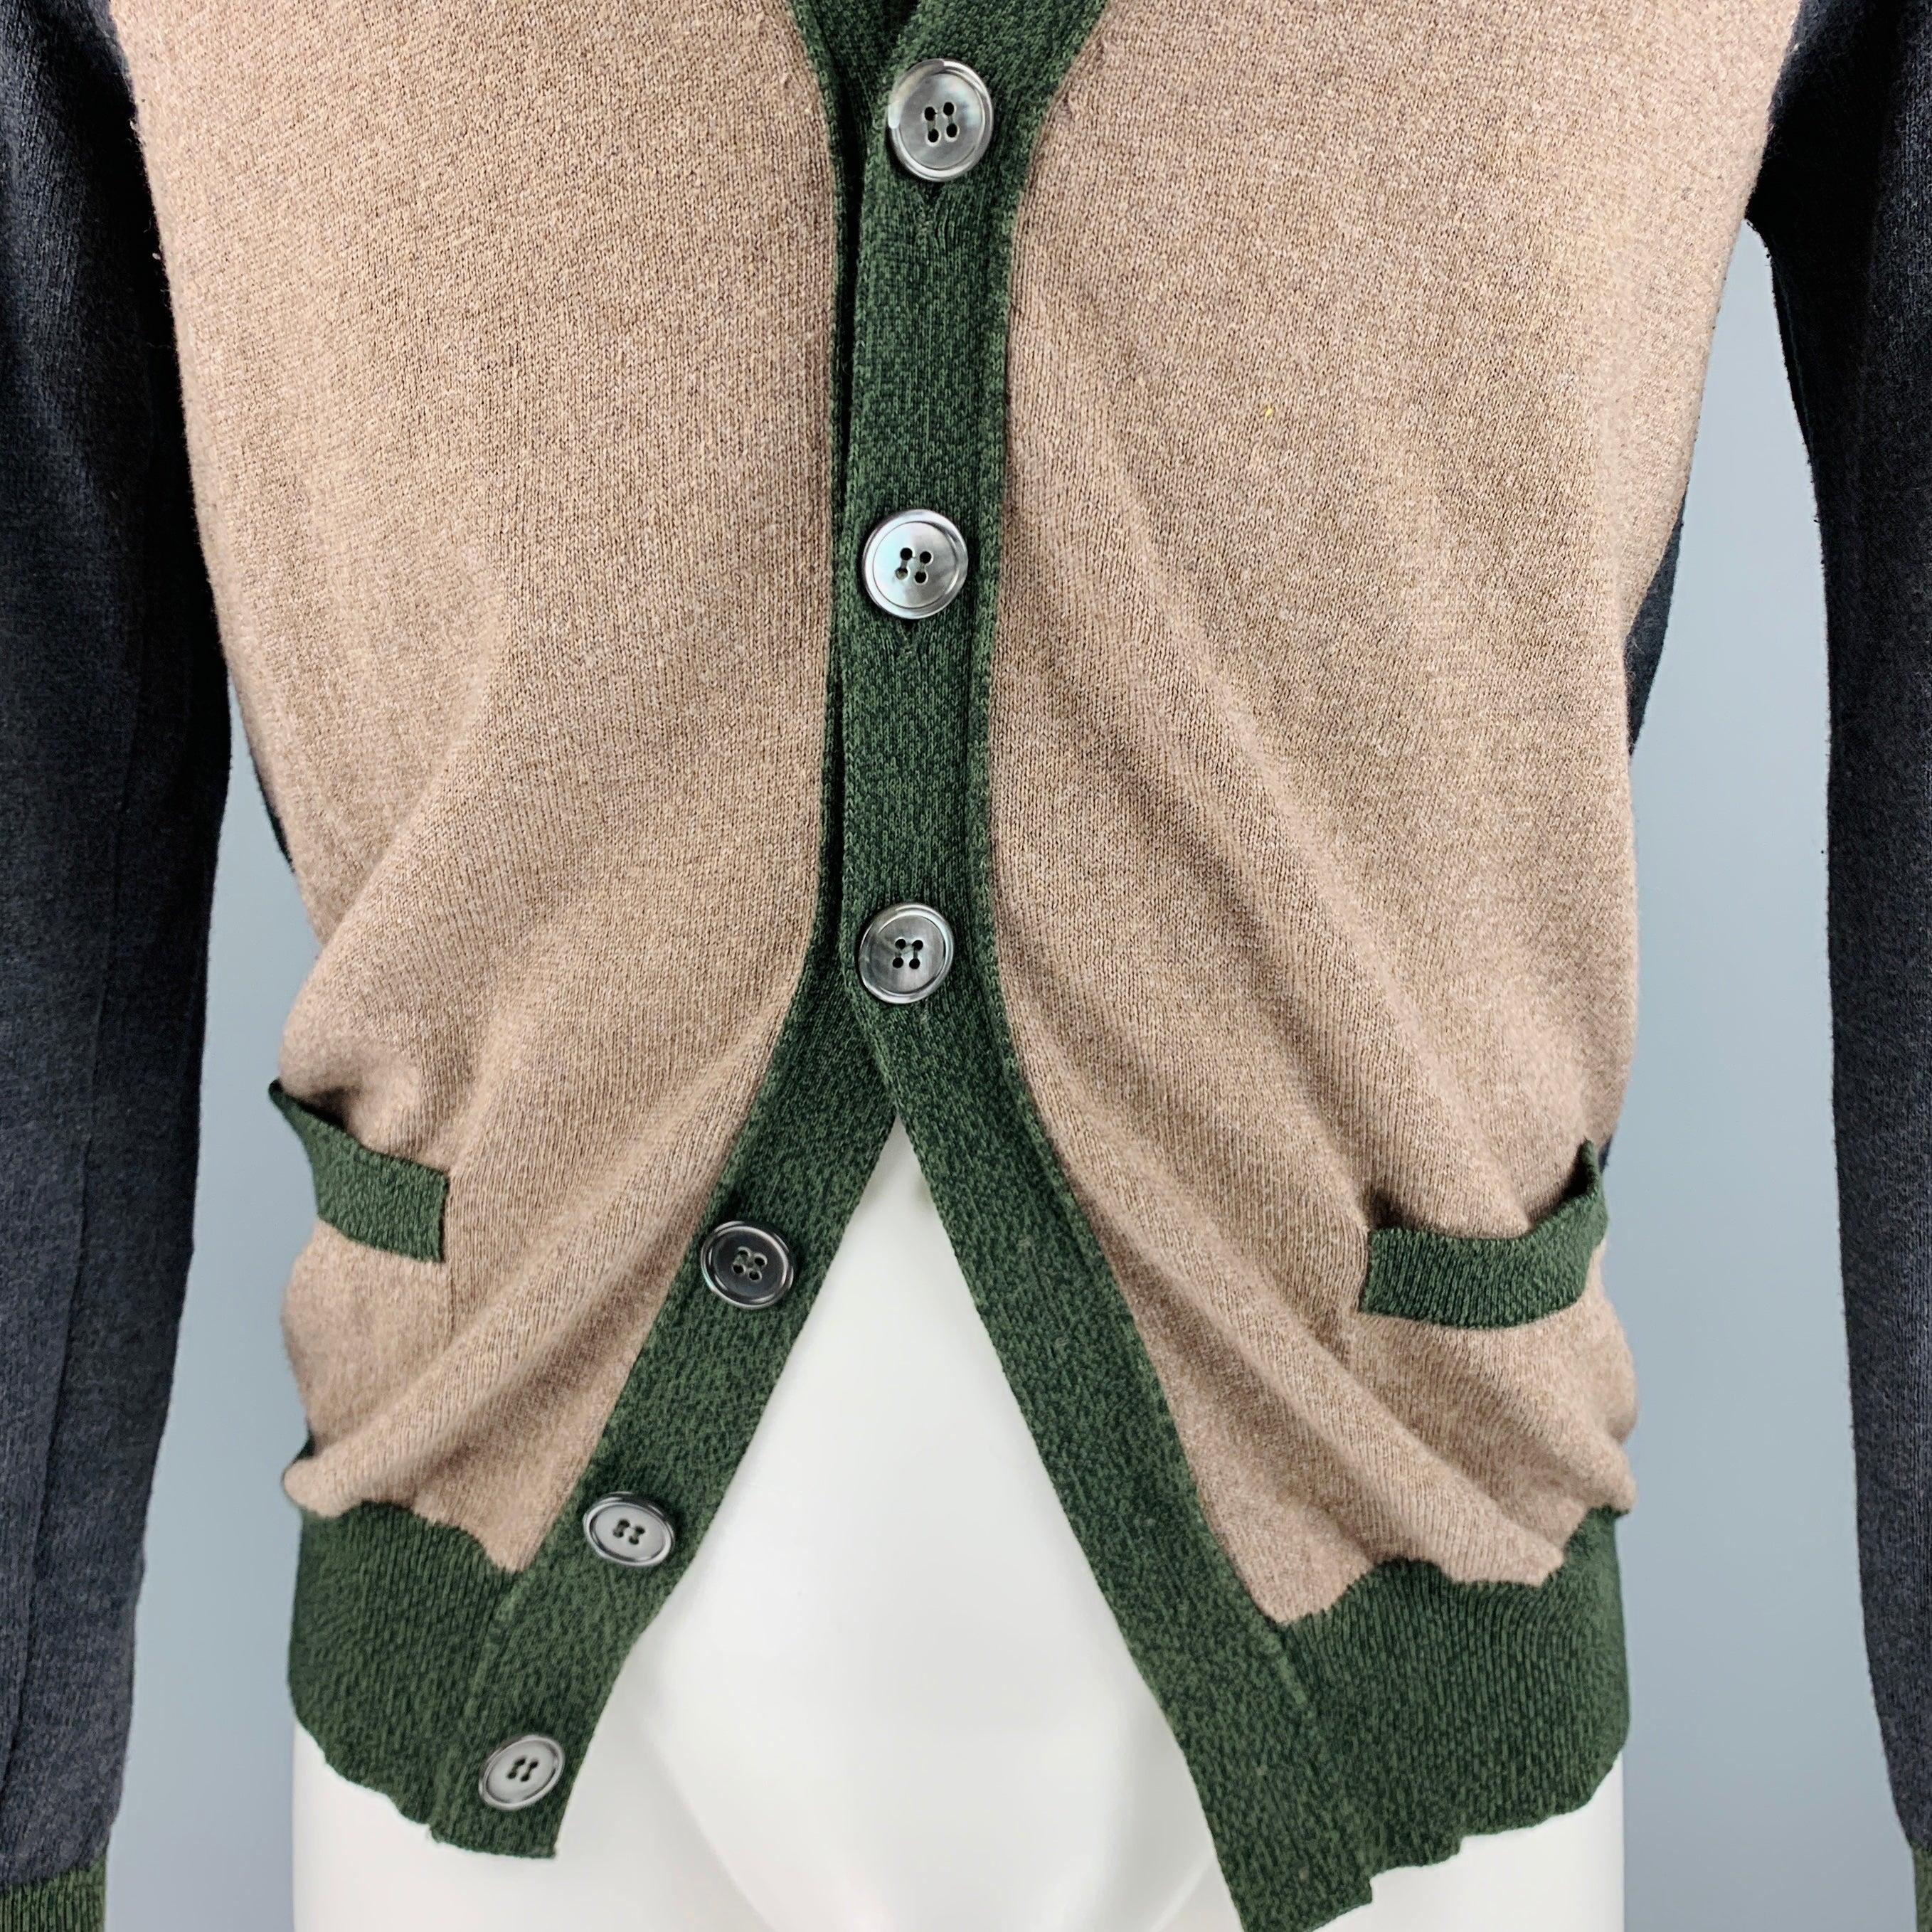 GOLDEN GOOSE cardigan
dans un
tricot en laine mérinos mélangée de coton marron et gris, avec un style color block, deux poches et une fermeture à boutons. Fabriqué en Italie. Très bon état. Signes d'usure modérés. 

Marqué :   M 

Mesures : 
